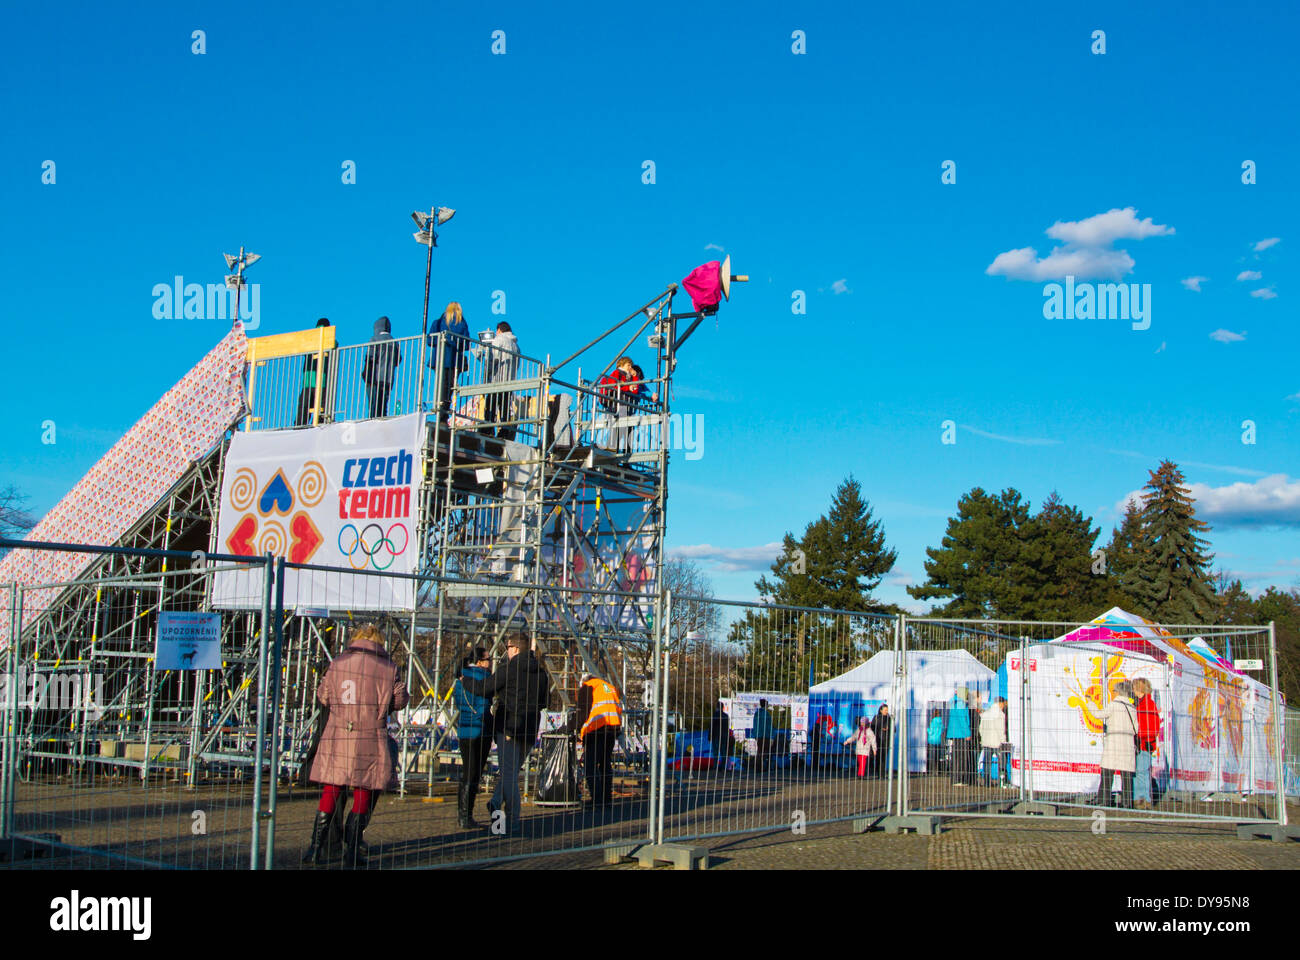 Villaggio Olimpico, Sochi 2014 Olimpiadi invernali, parco tematico Letenske sady park, Praga, Repubblica Ceca, Europa Foto Stock